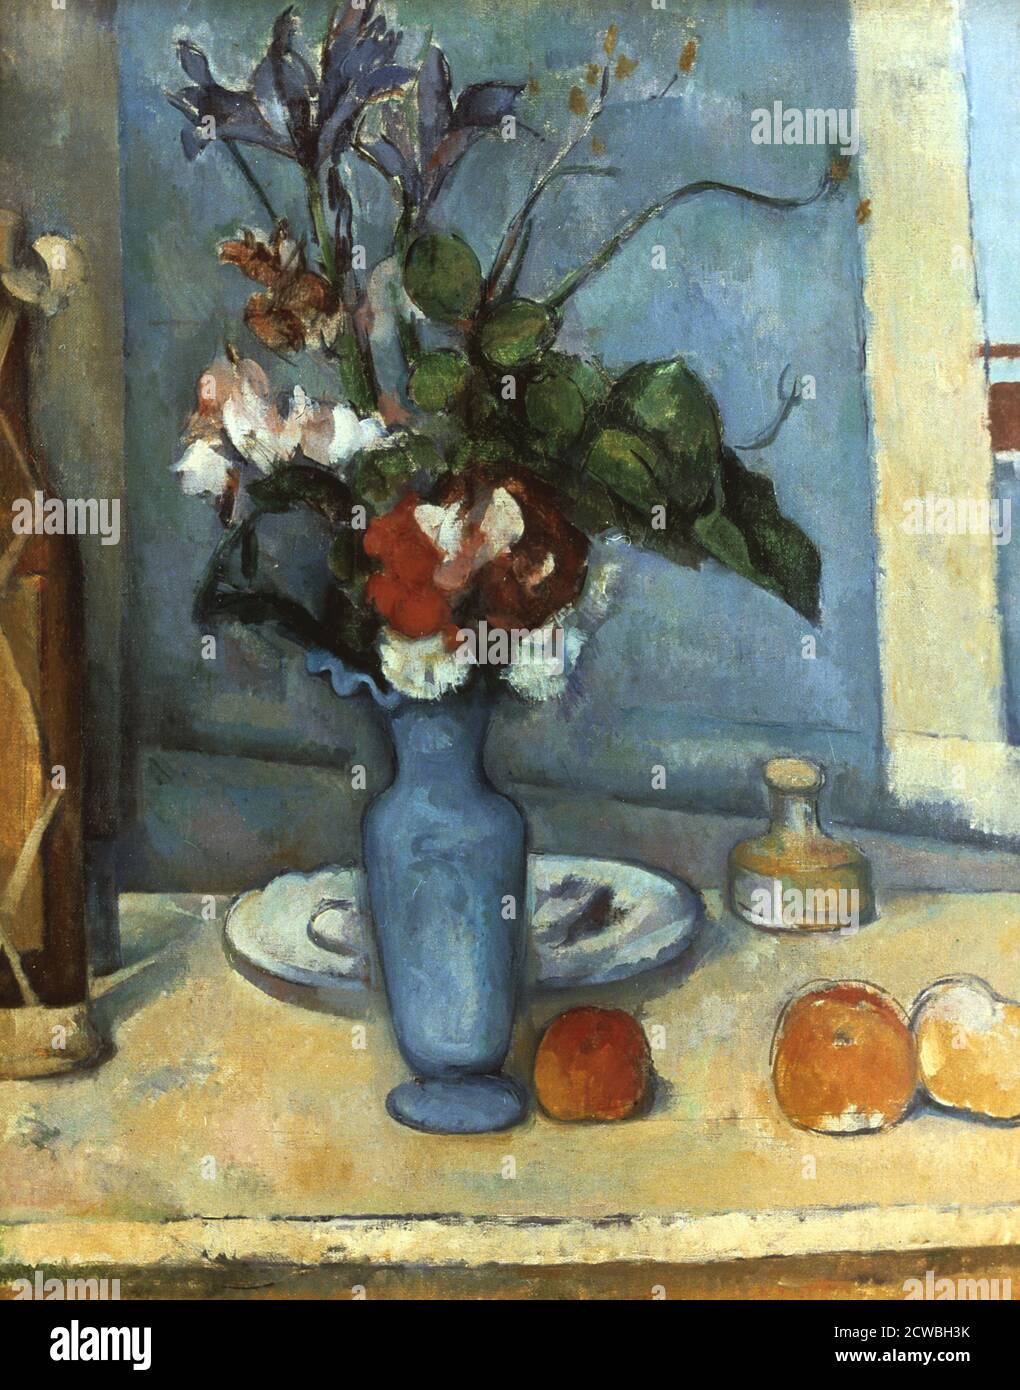 Le Vase Bleu', by paul Cezanne, 1889-1890. 'The Blue Vase'. Stock Photo